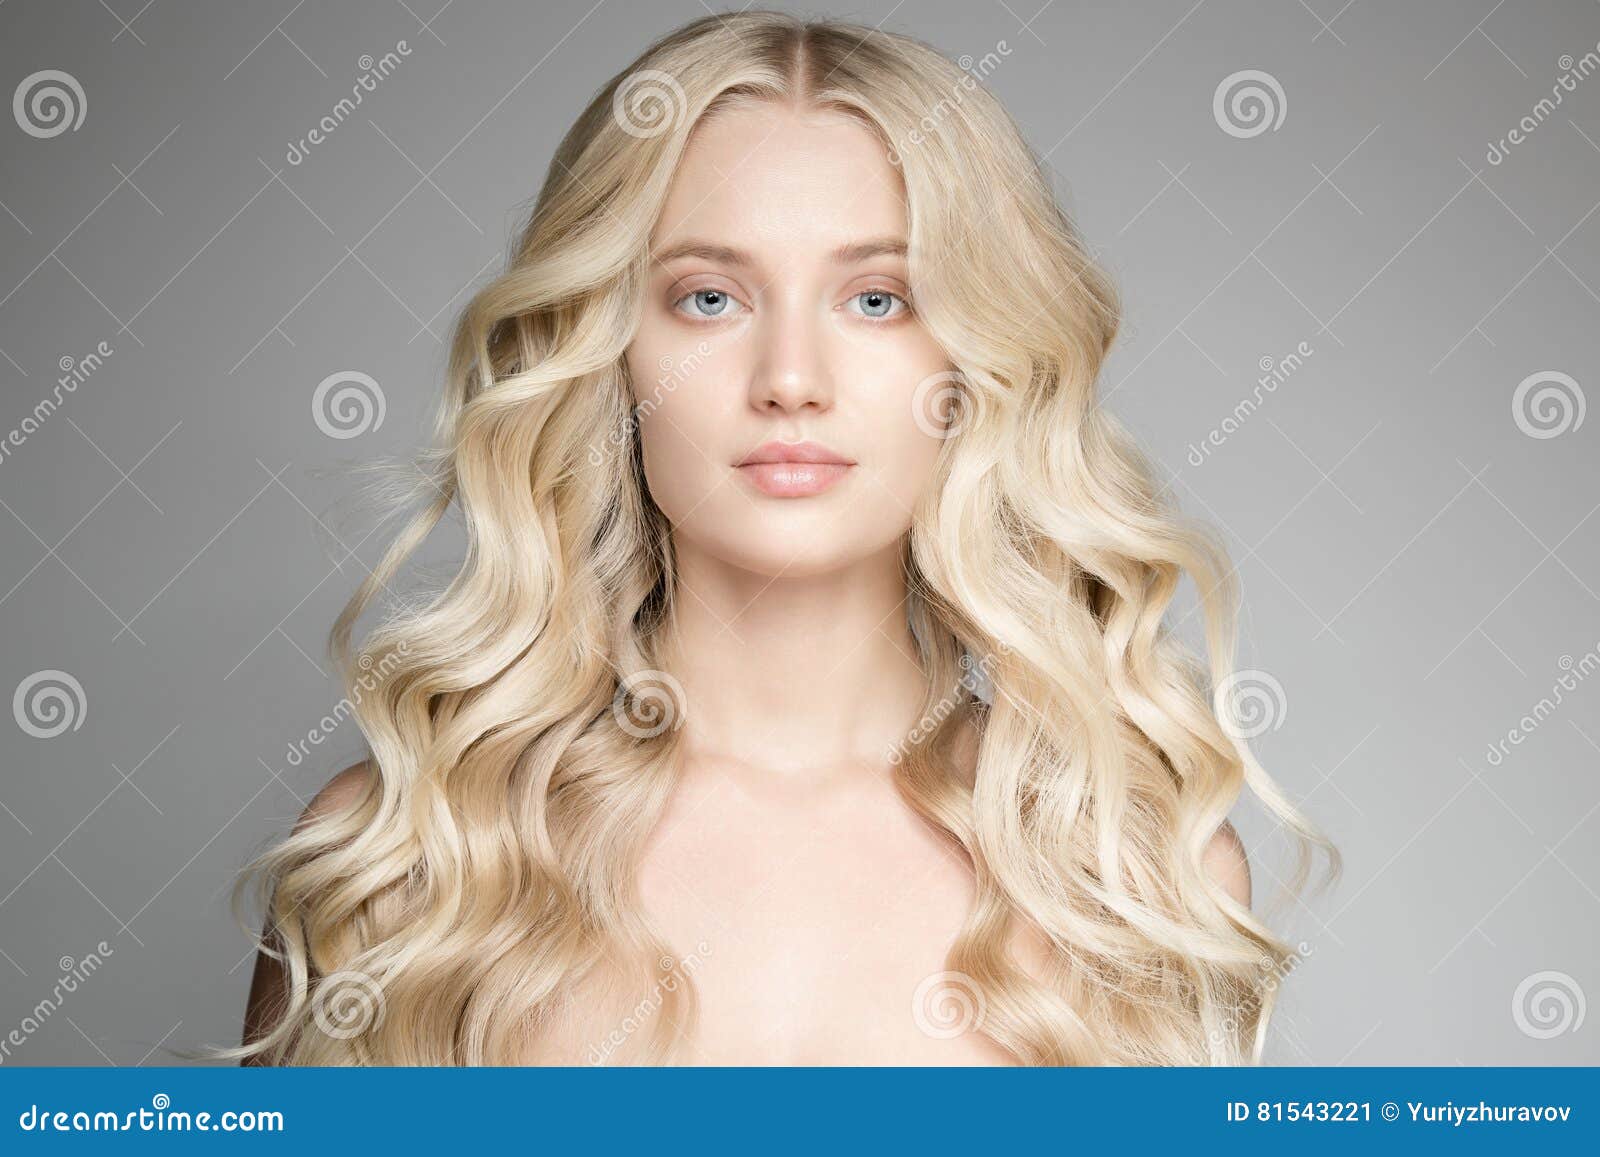 Blond Hair Artist - wide 6